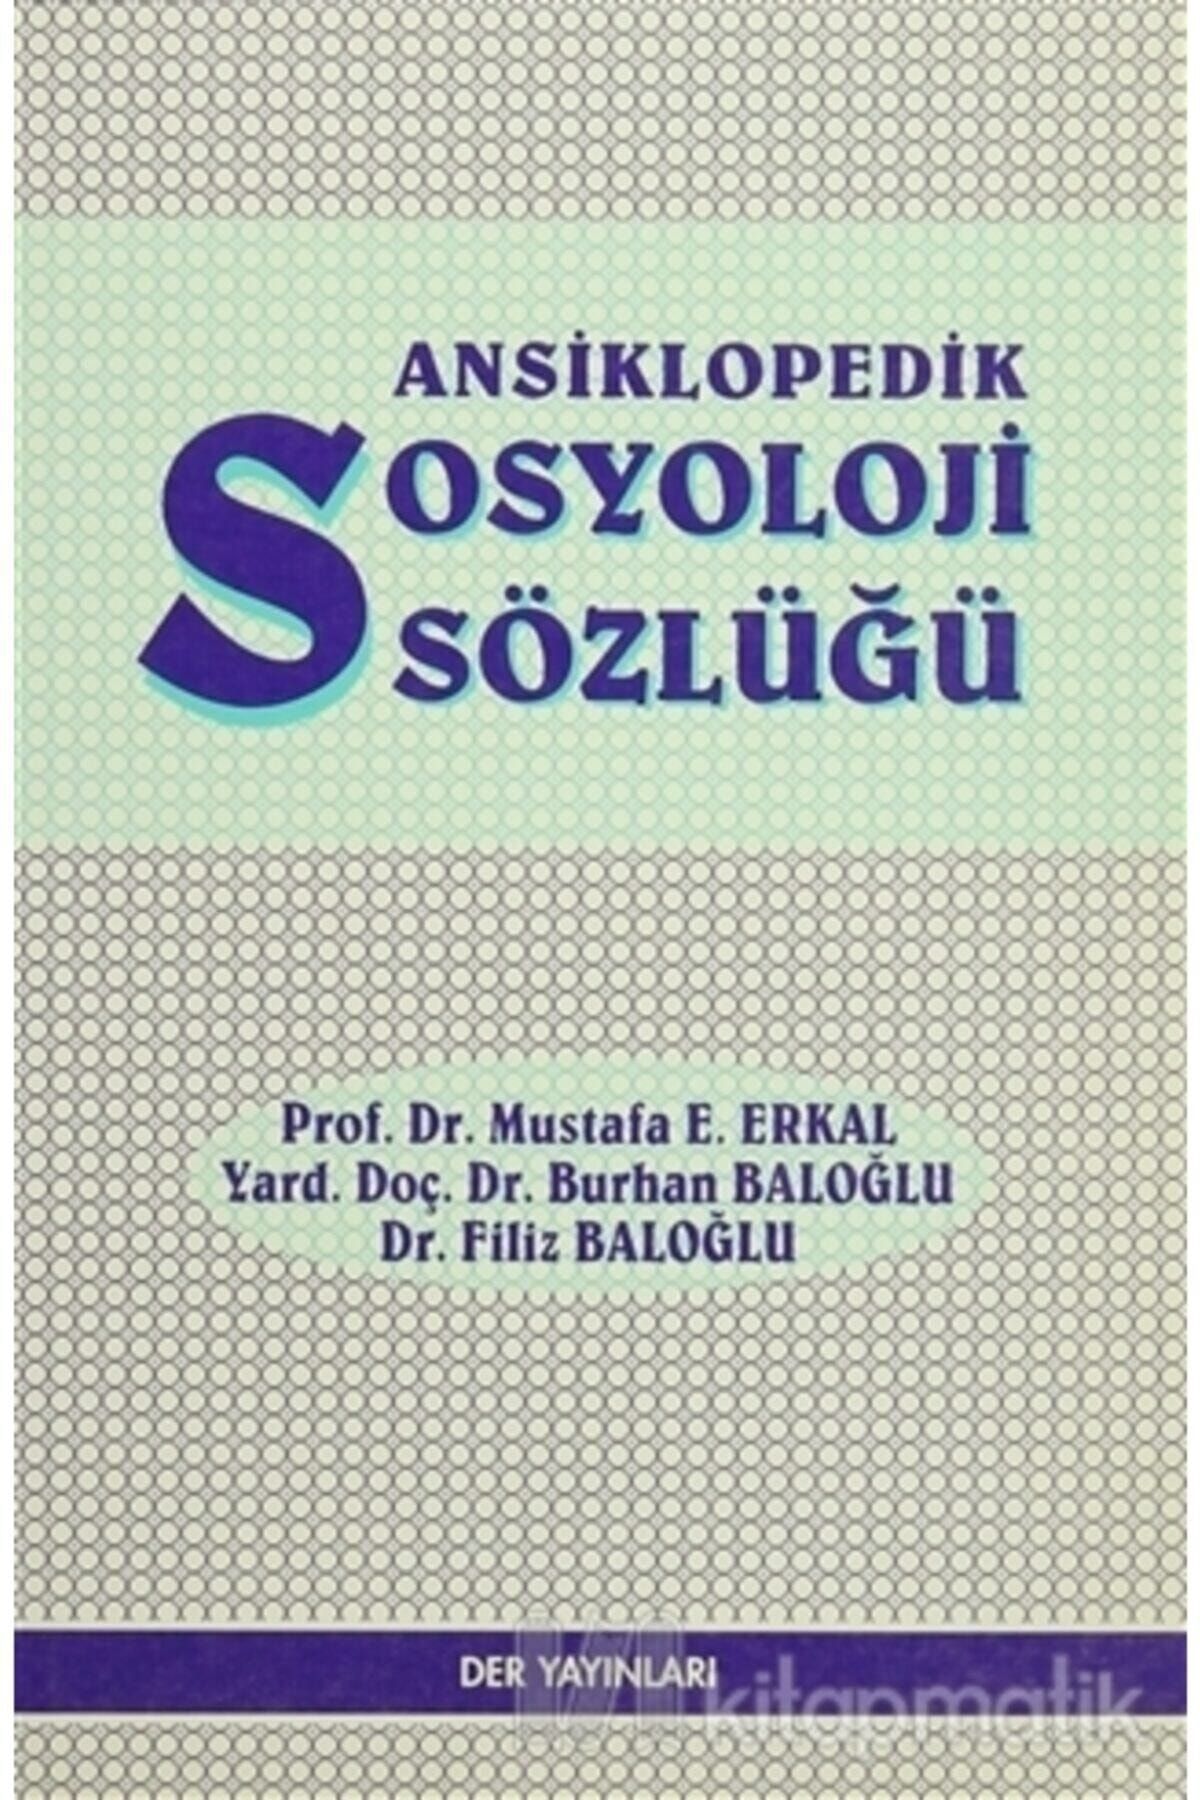 Der Yayınları Ansiklopedik Sosyoloji Sözlüğü